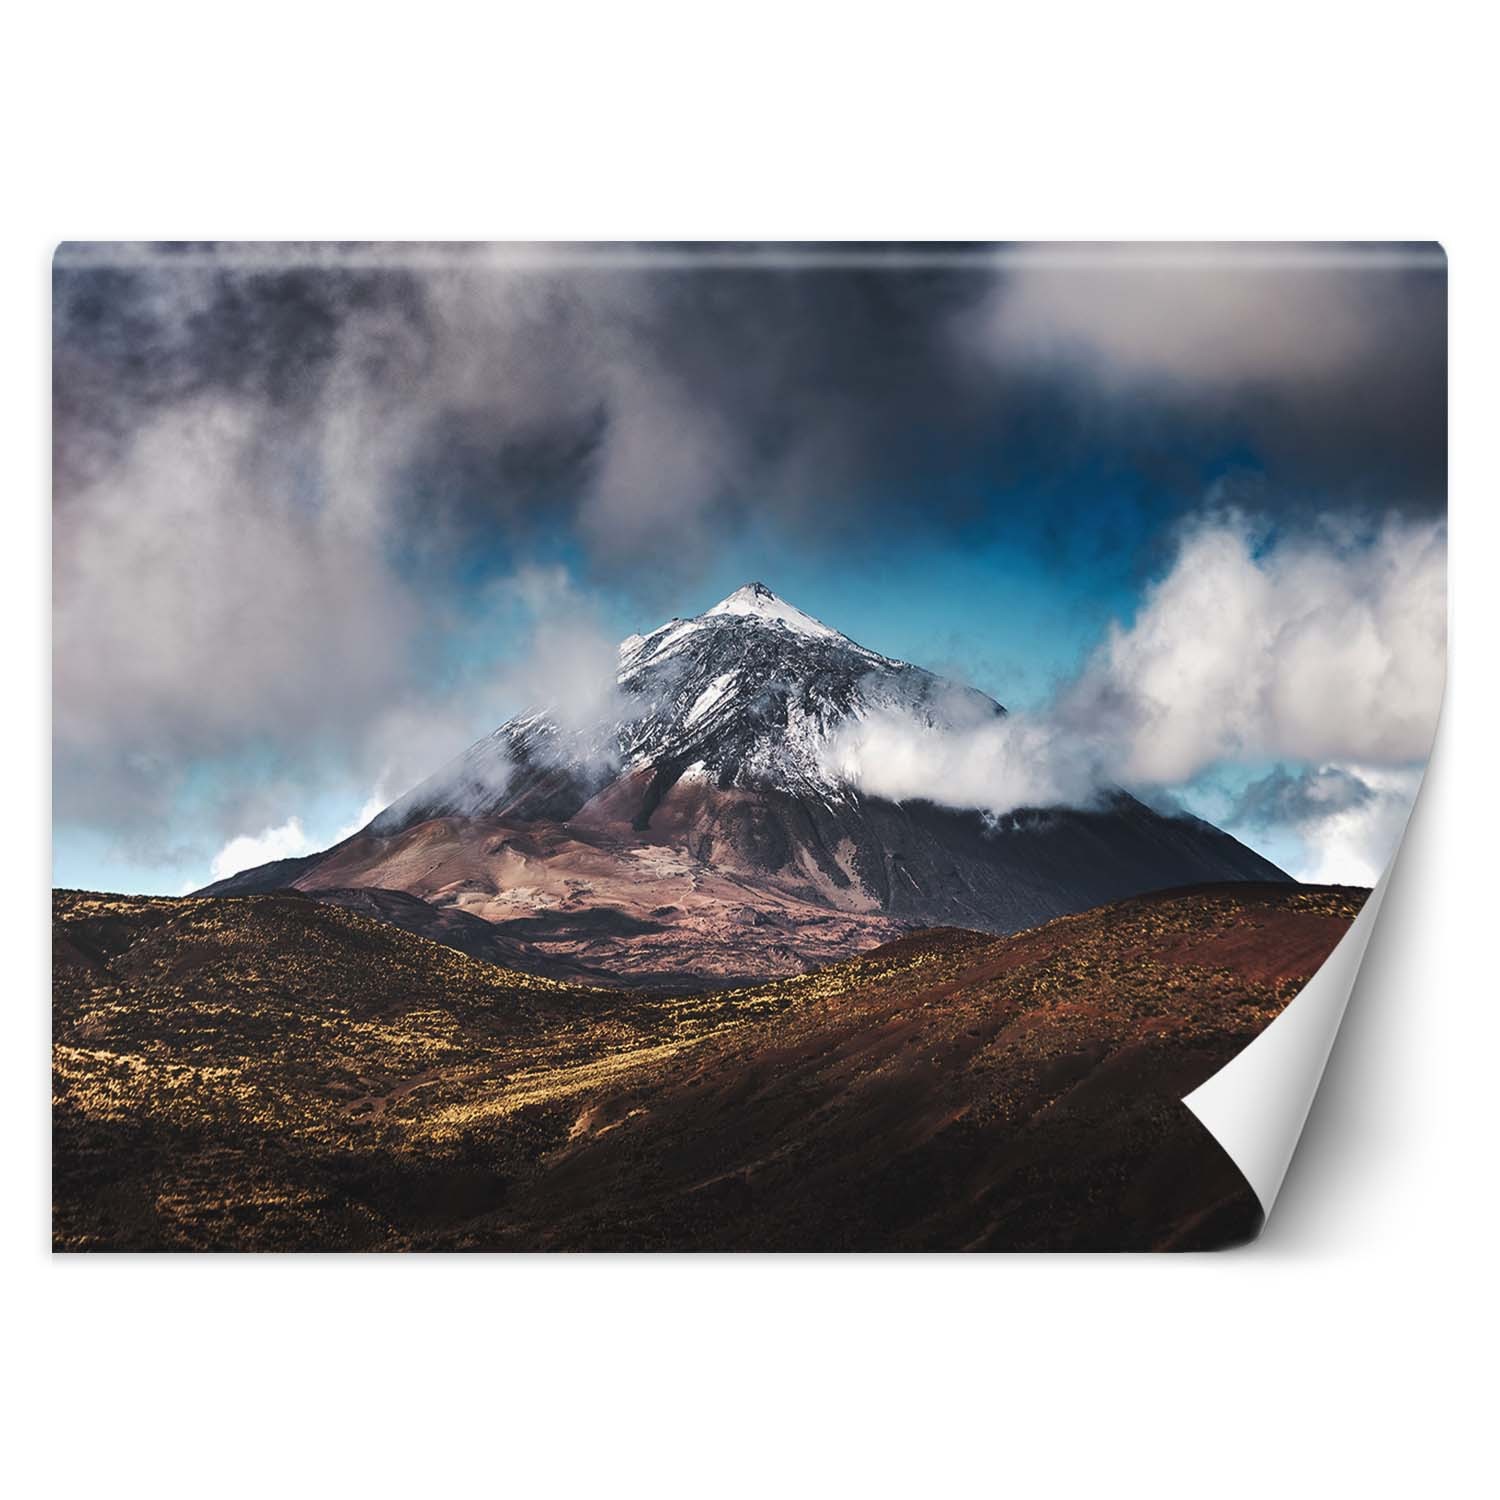 Trend24 – Behang – Bergtop In De Wolken – Behangpapier – Fotobehang Natuur – Behang Woonkamer – 200x140x2 cm – Incl. behanglijm